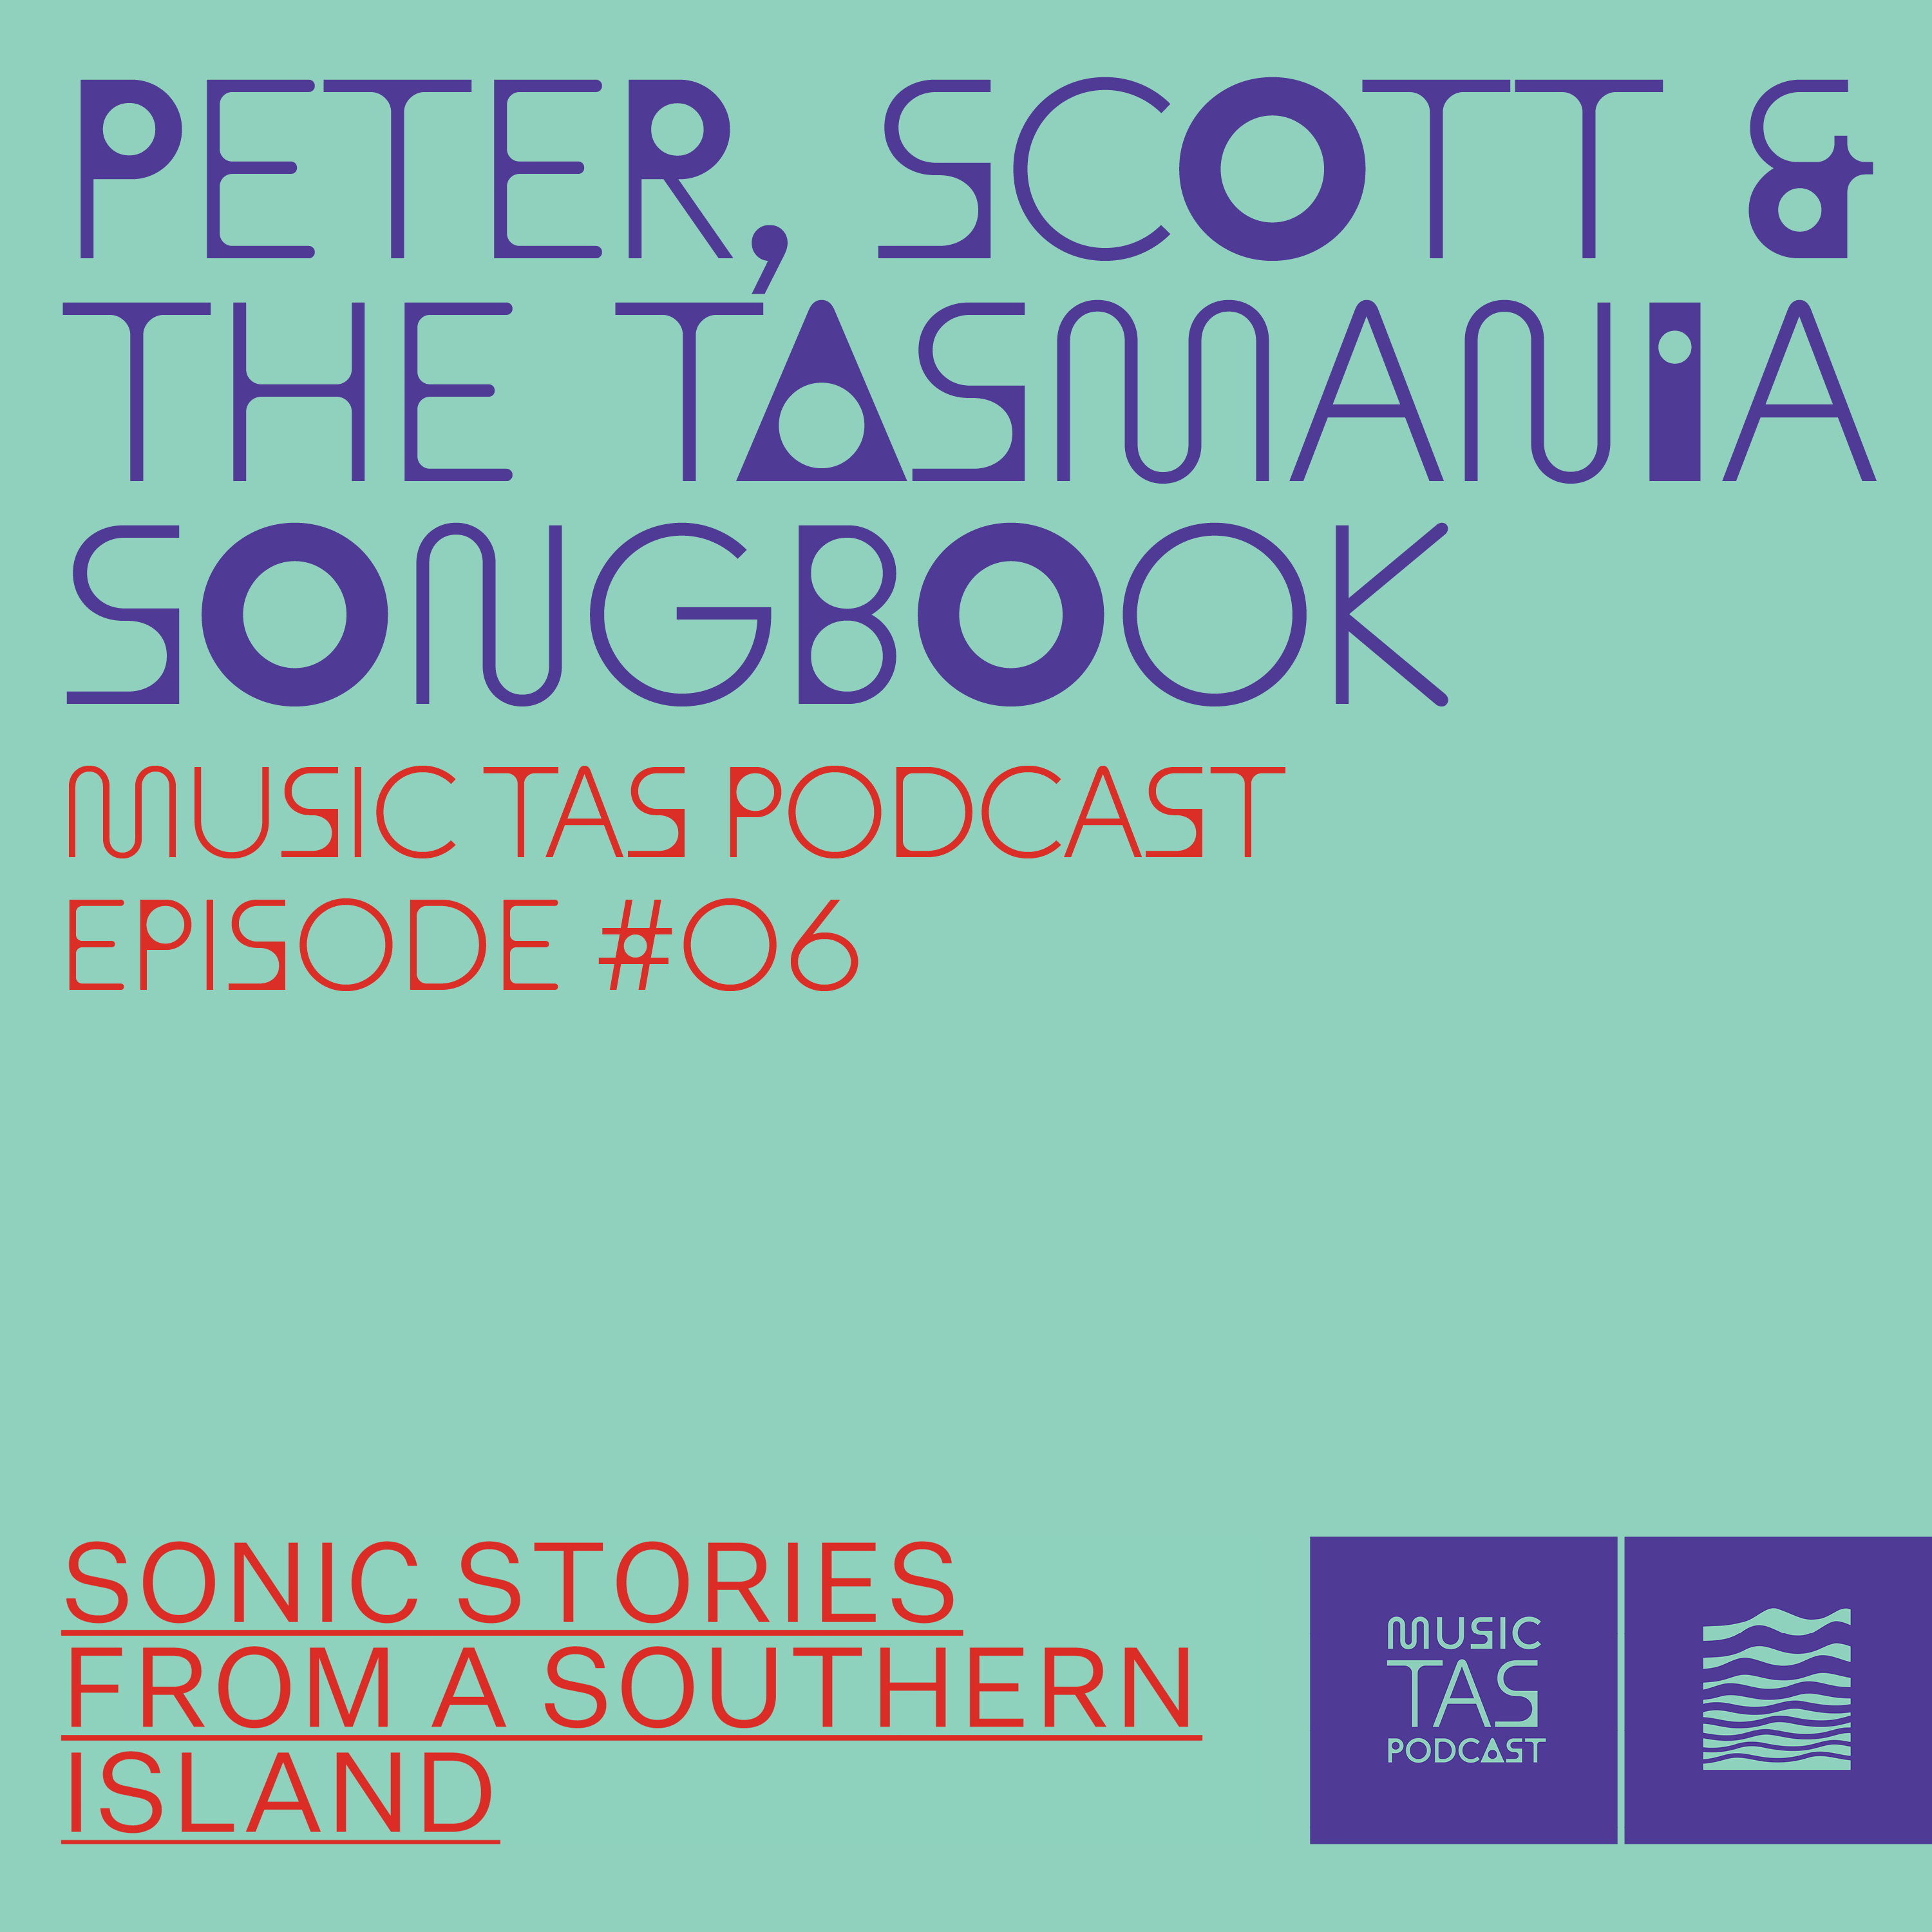 Peter, Scott & The Tasmania Songbook, Music Tas Podcast Episode #06